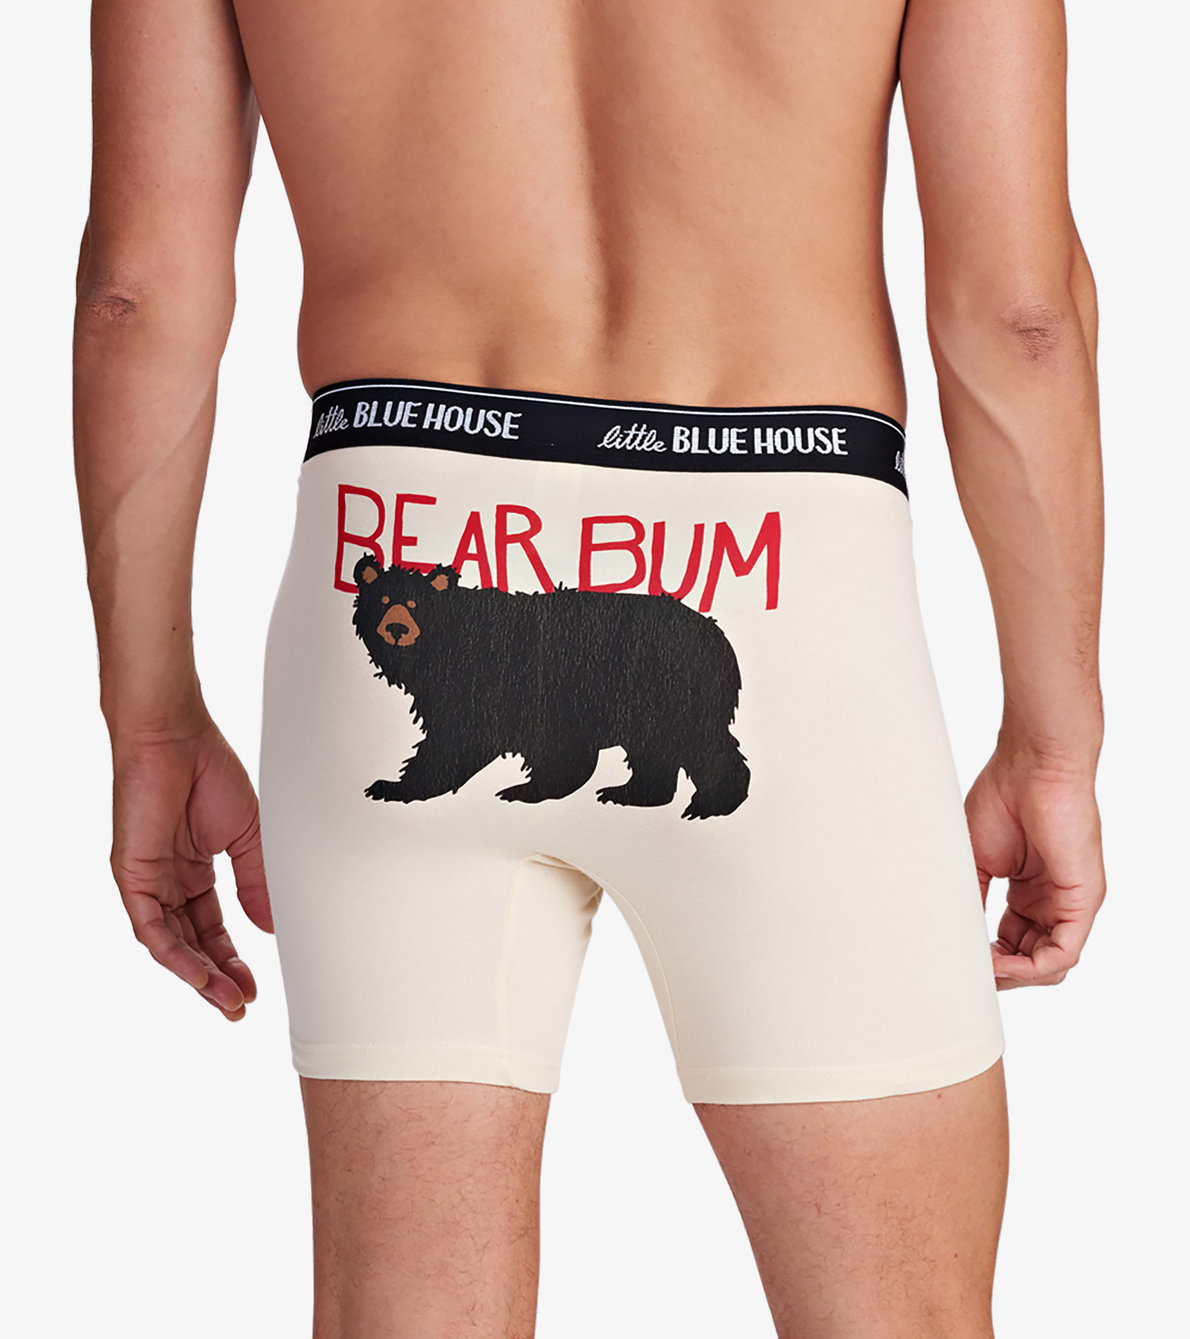 View larger image of Bear Bum Men's Boxer Briefs